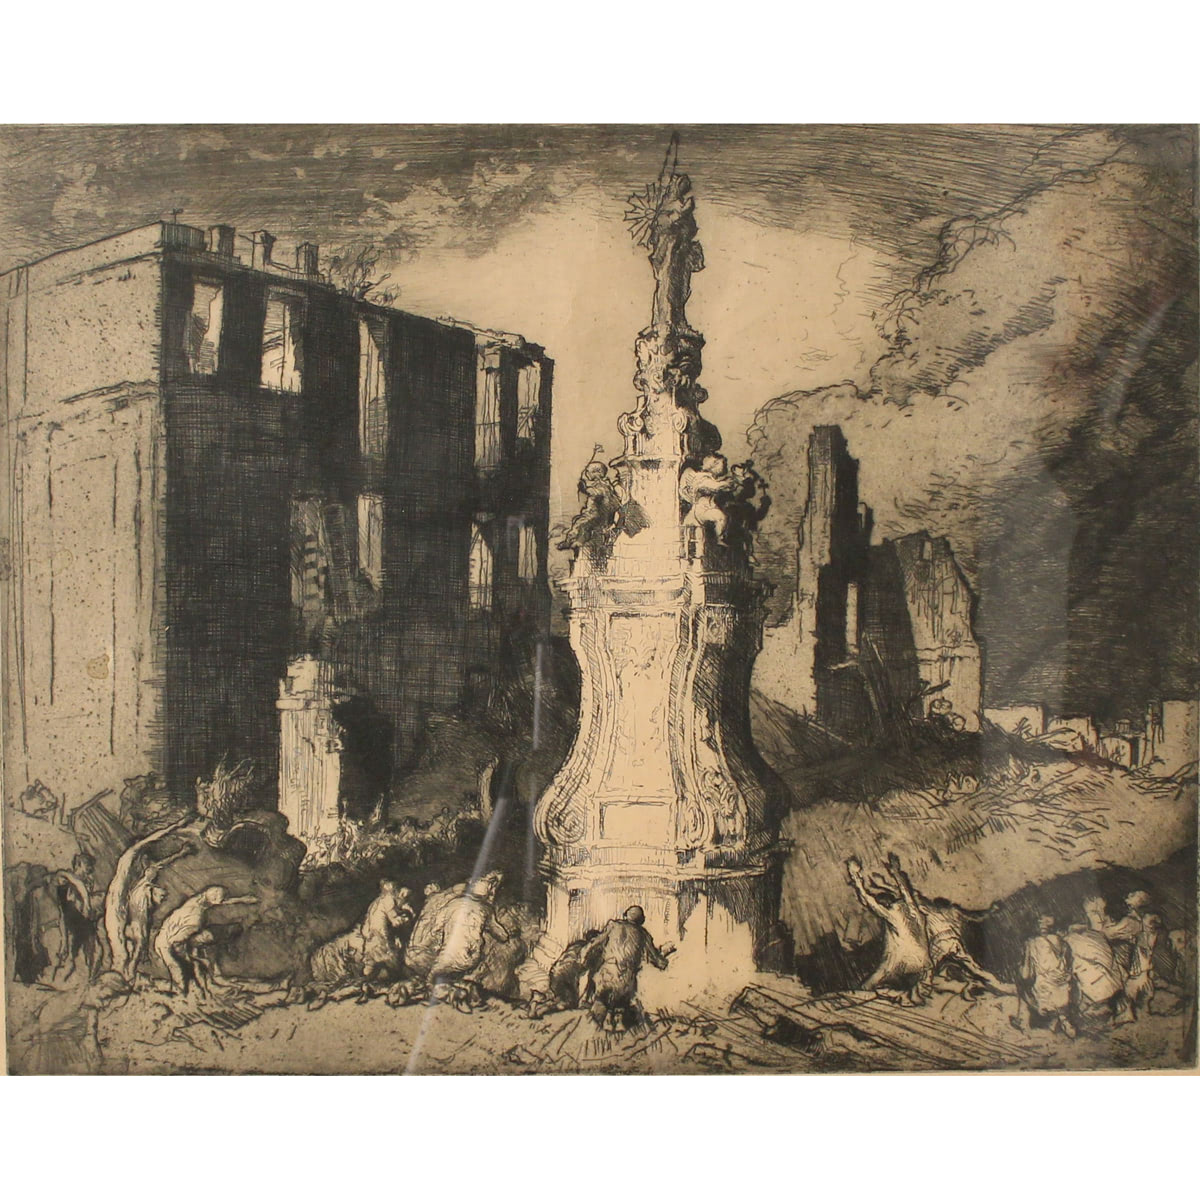 FRANK BRANGWYN (1867/1956) "Adorazione dell'Immacolata dopo il terremoto di Messina" - "Adoration of the Madonna after the Messina earthquake"